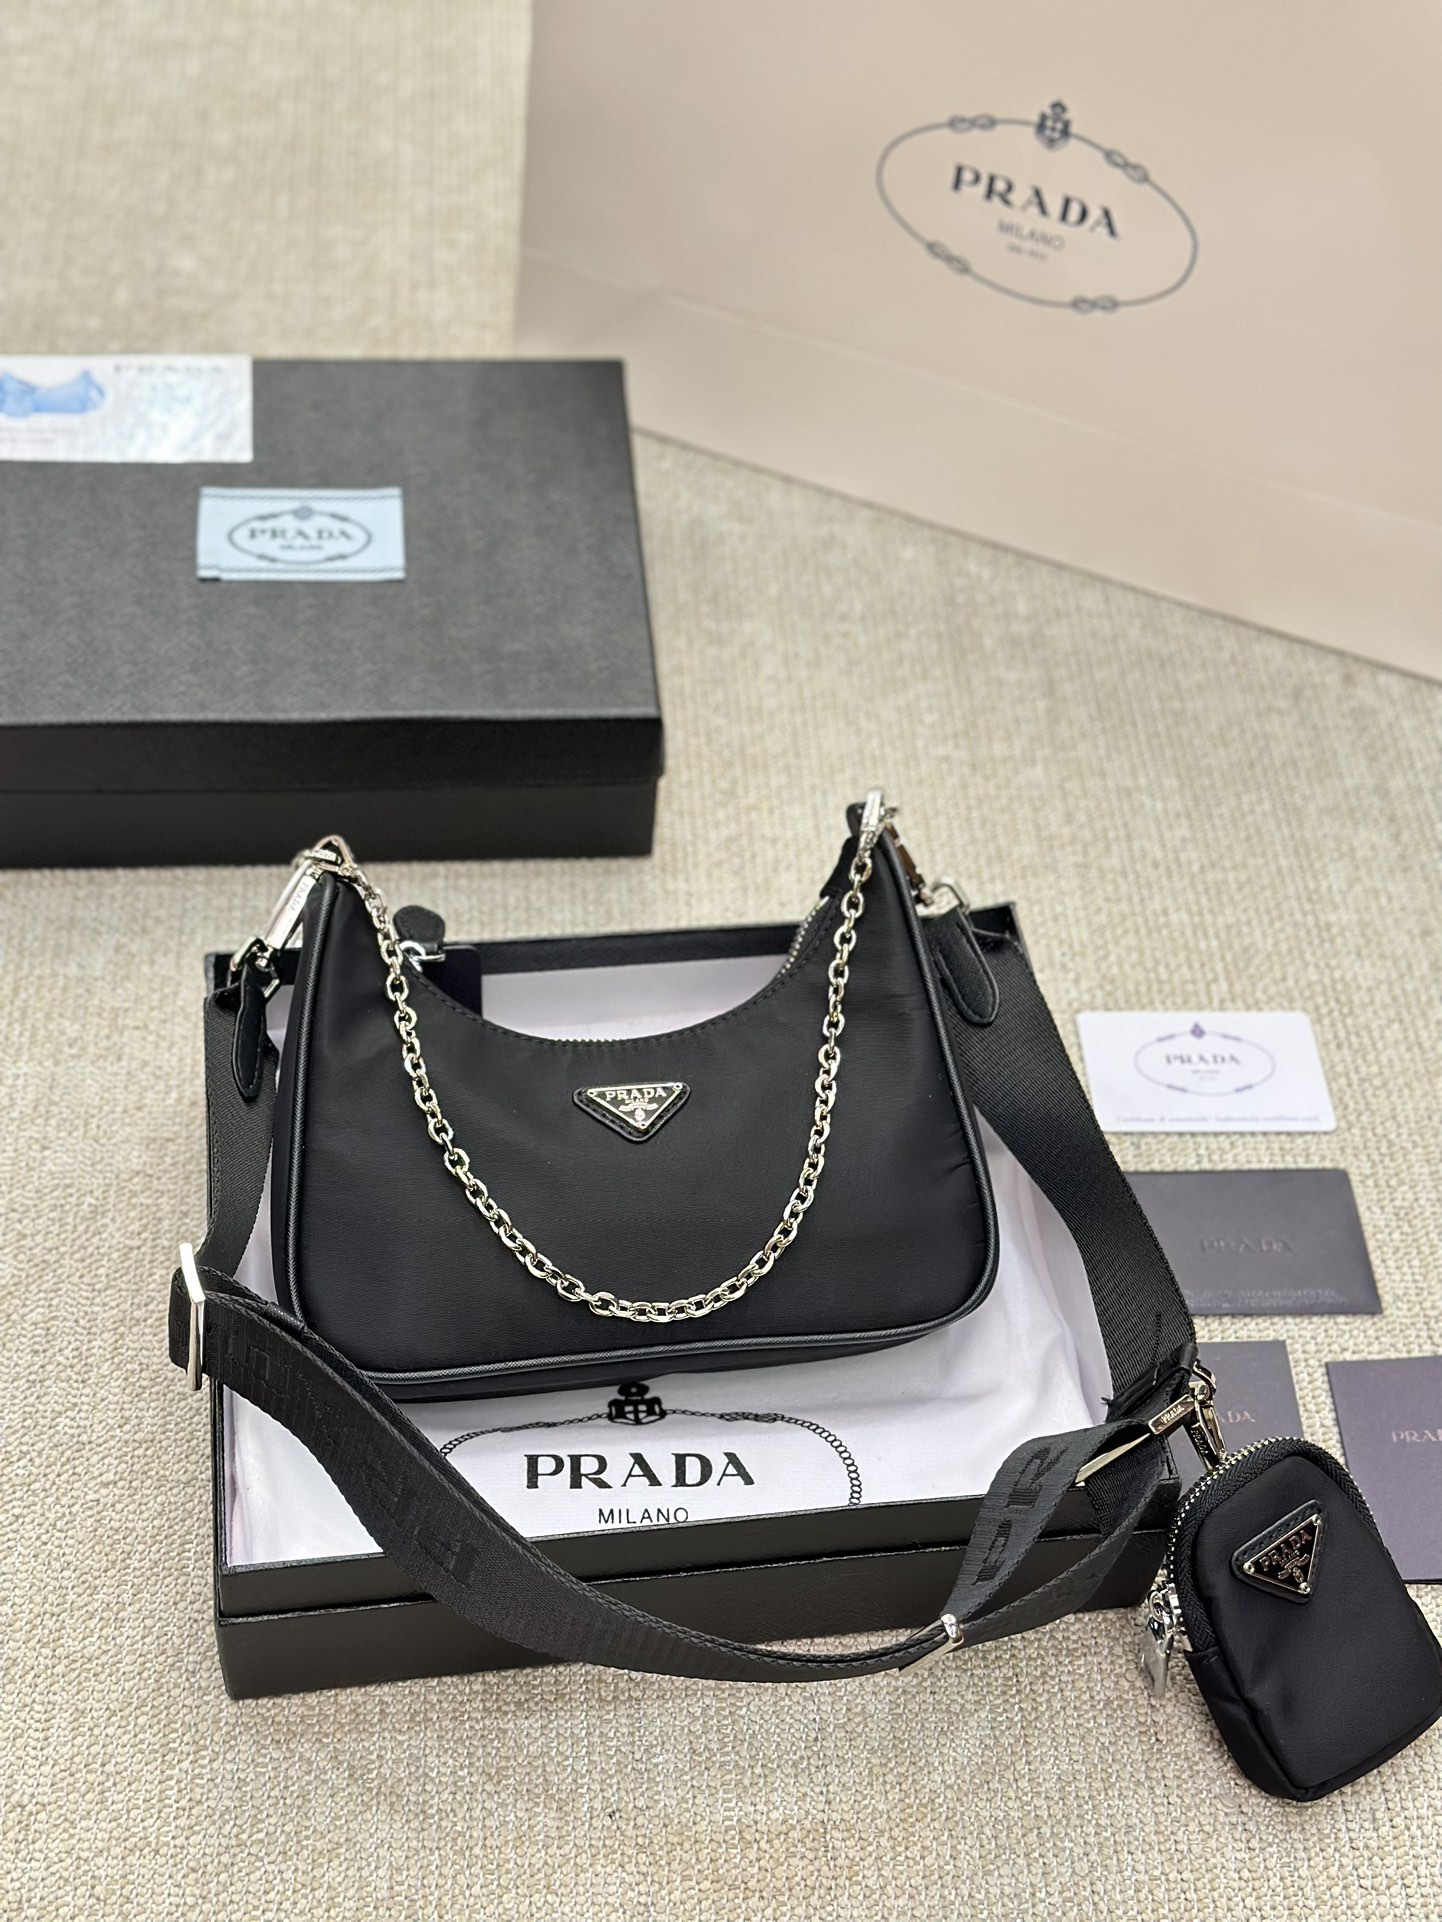 Prada three-in-one chain bag